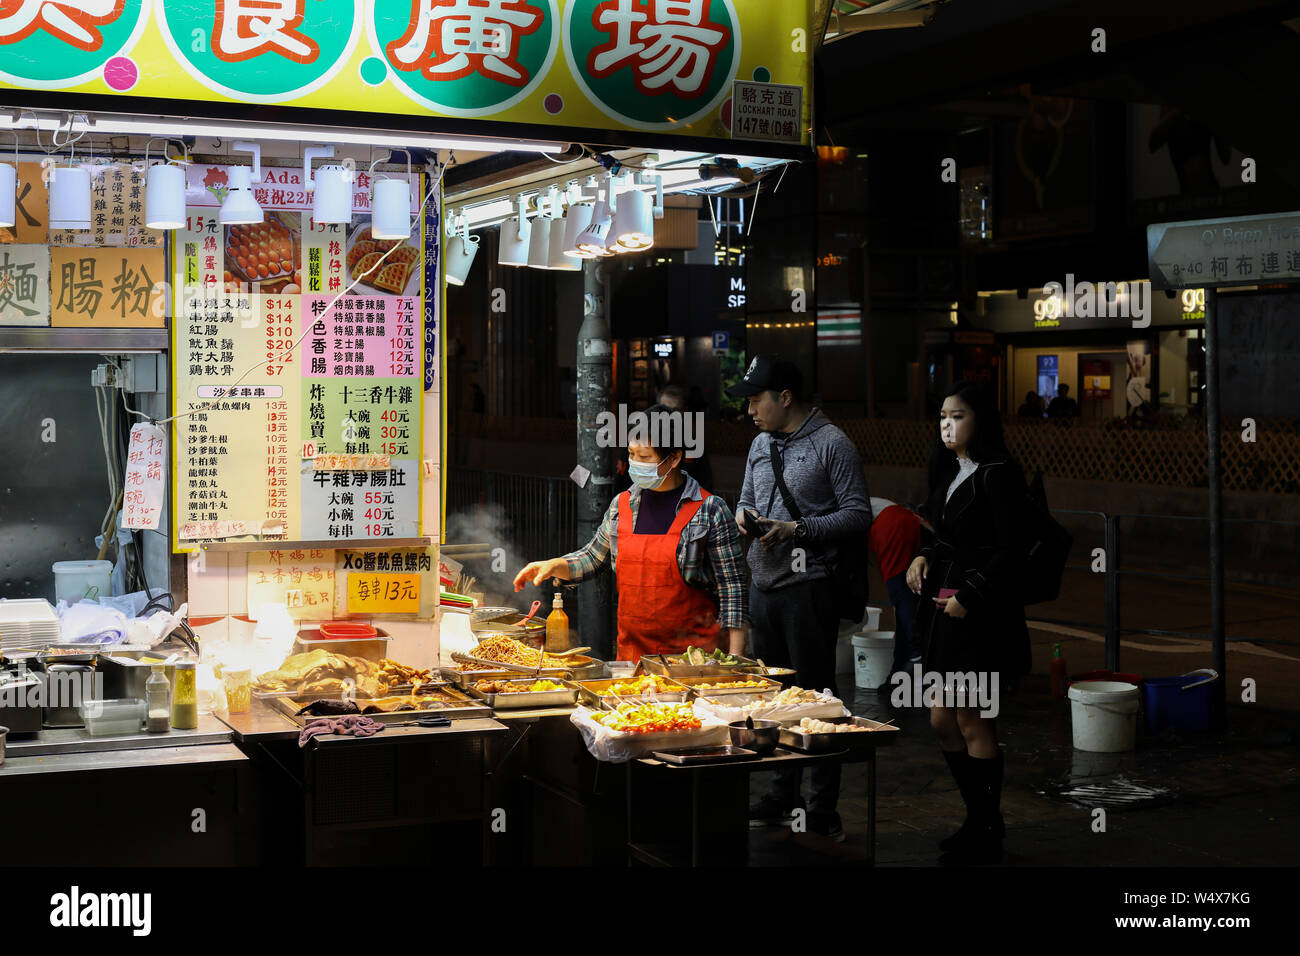 De vendeurs d'aliments de rue à l'angle de Lockhart Road et O'Brien Road à Hong Kong (Région administrative spéciale de la République populaire de Chine Banque D'Images